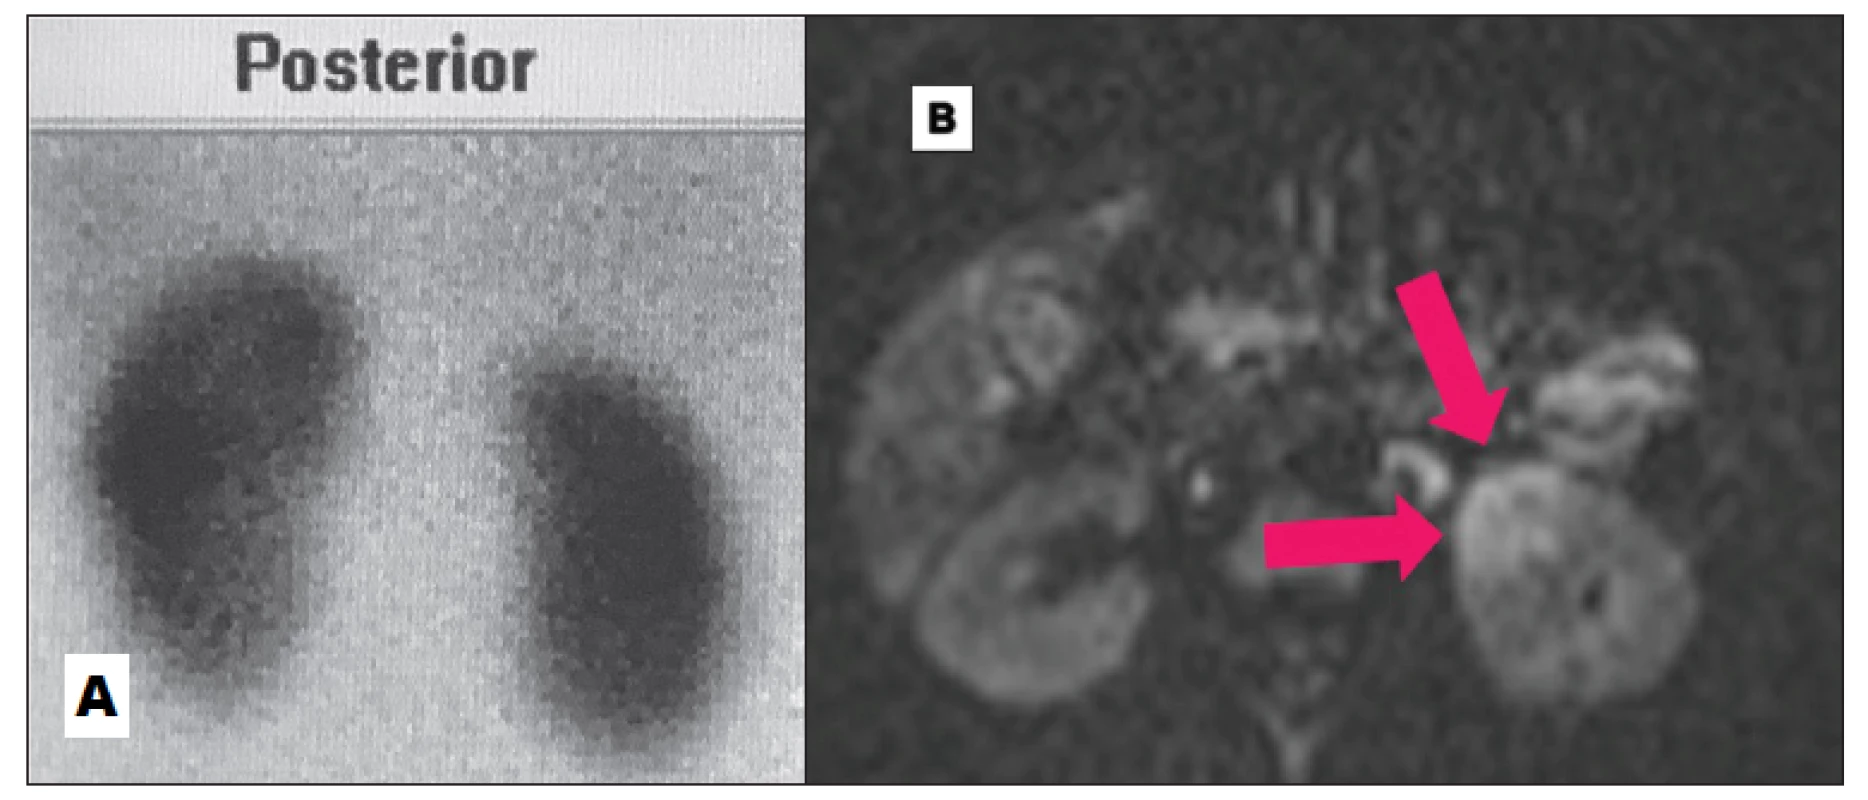 Negativní DMSA (A) a četná zánětlivá ložiska na DW-MRI (B) v akutní fázi.